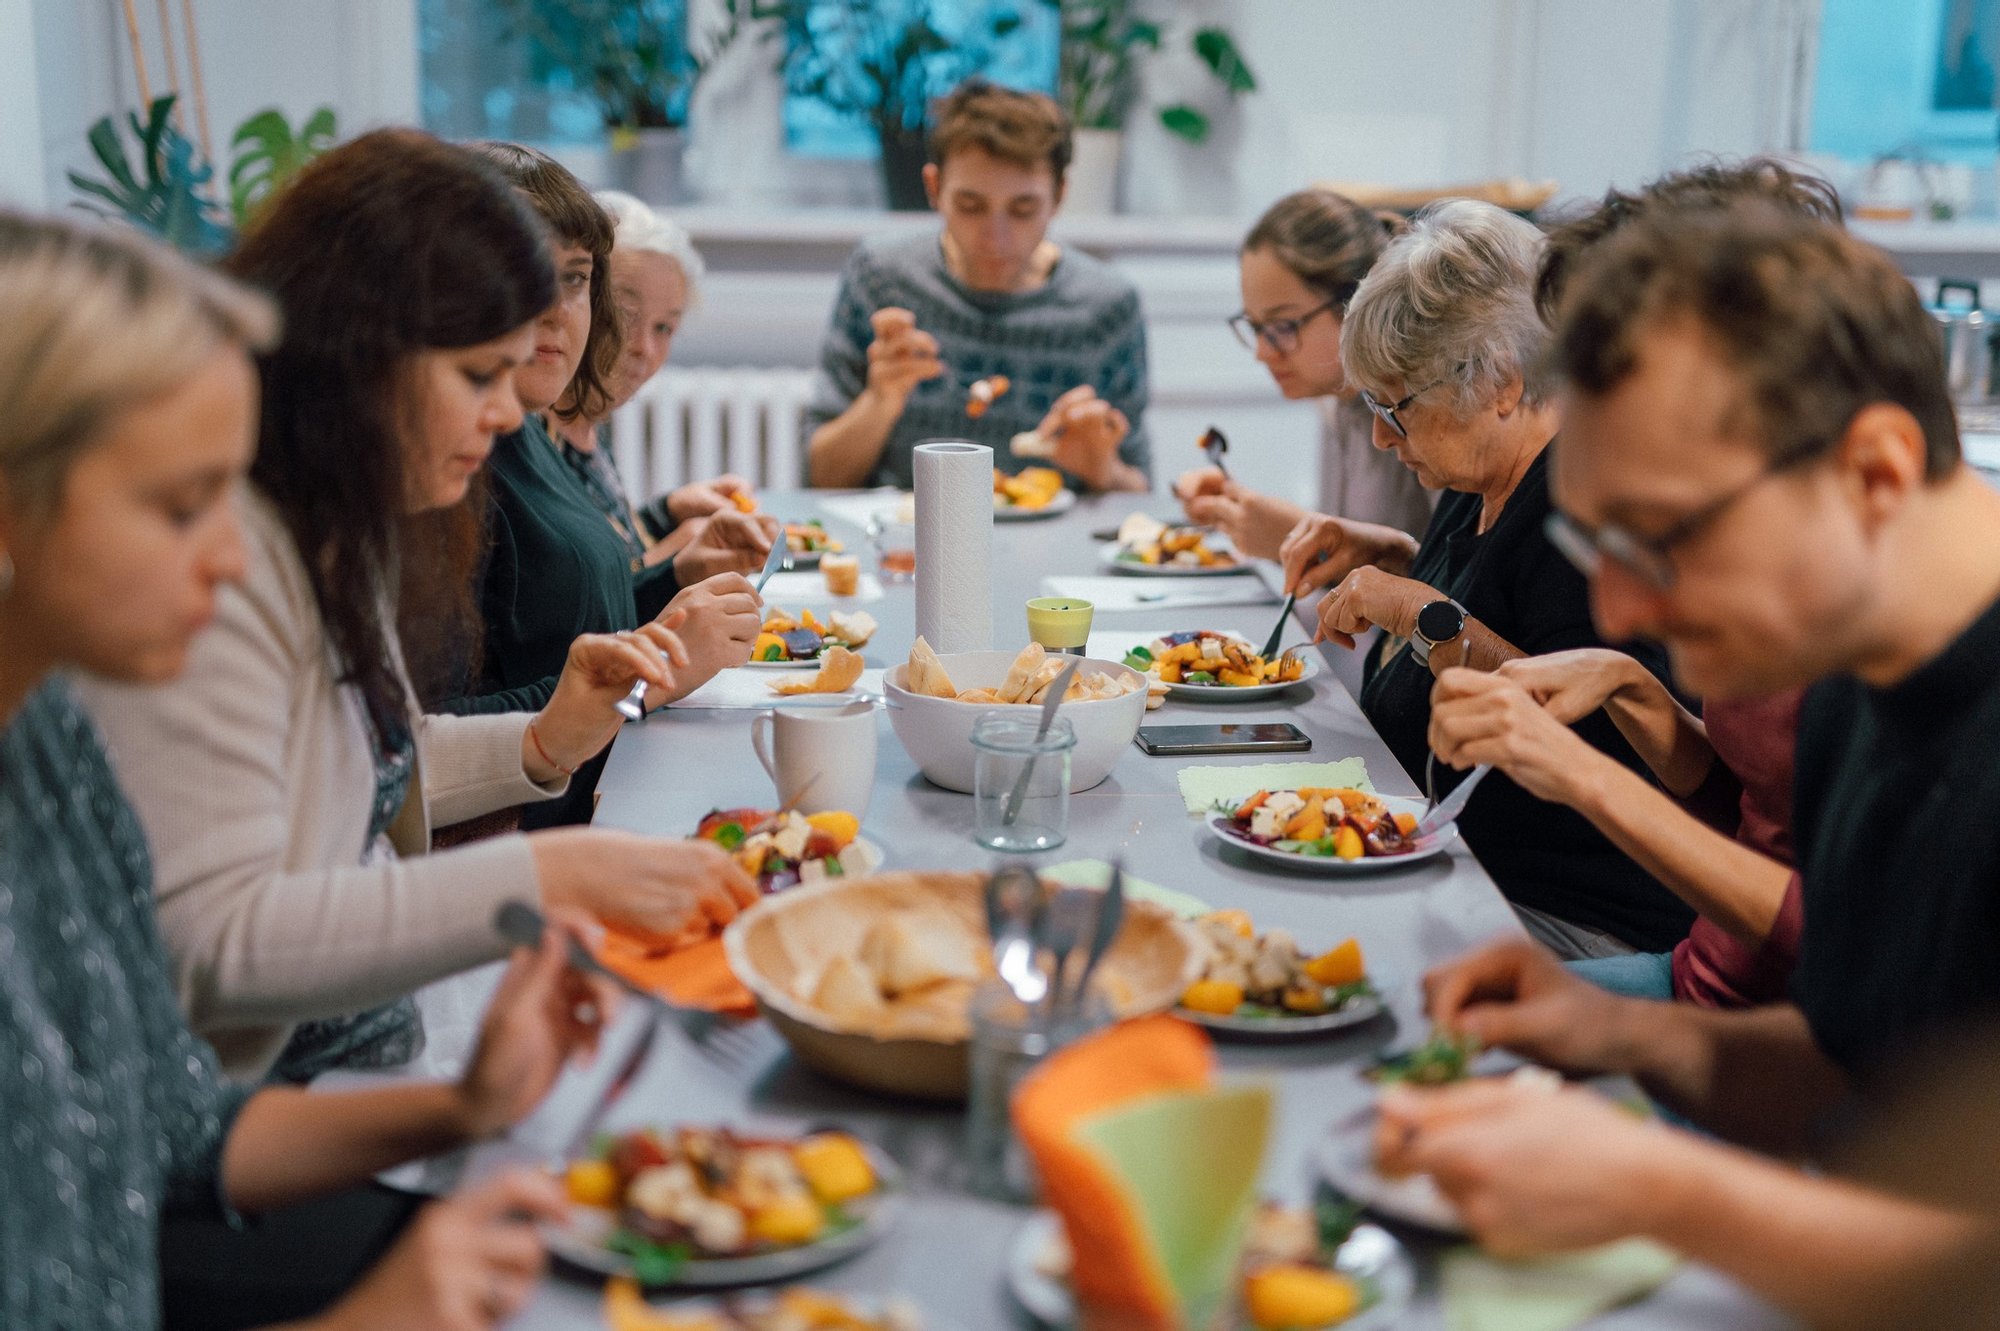 Kolorowa, pozioma fotografia. Grupa osób w różnym wieku siedzi przy długim stole zastawionym jedzeniem. To uczestnicy i uczestniczki warsztatów kulinarnych wspólnie jedzący to, co przygotowali podczas spotkania.